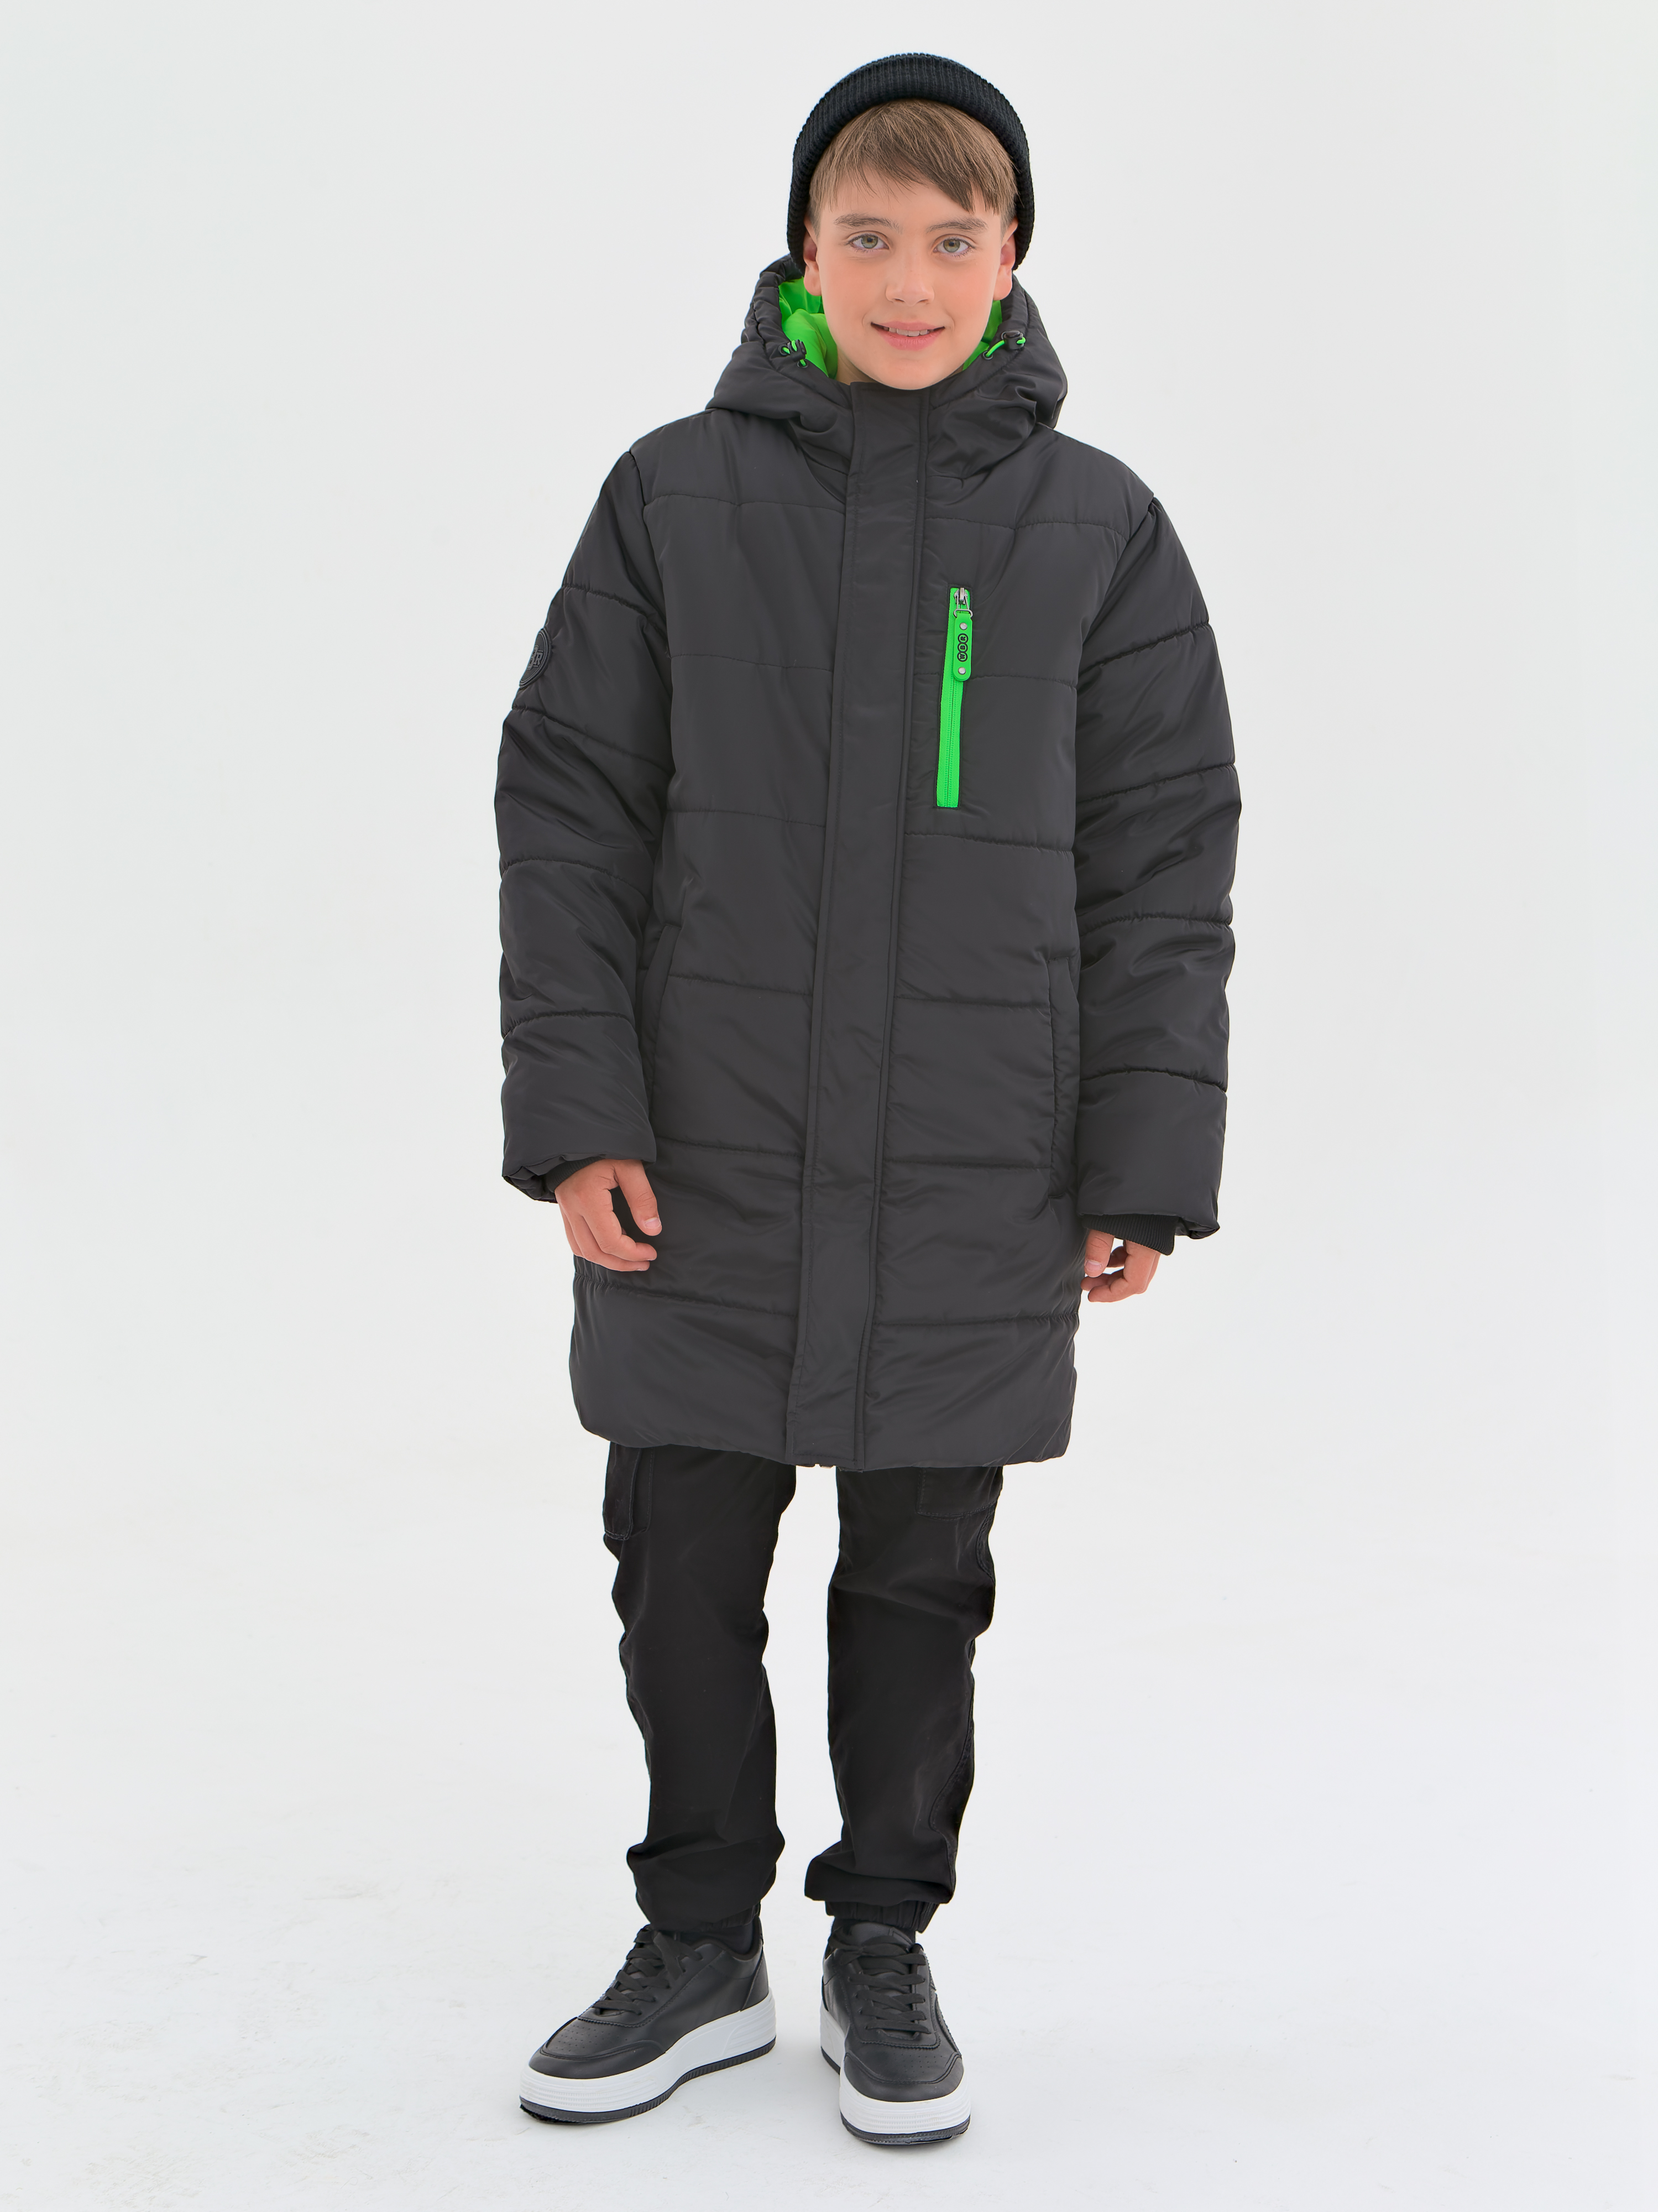 Пальто детское WBR 68-003, черный, 152 стеганое пальто пуховик с капюшоном emporio armani детское